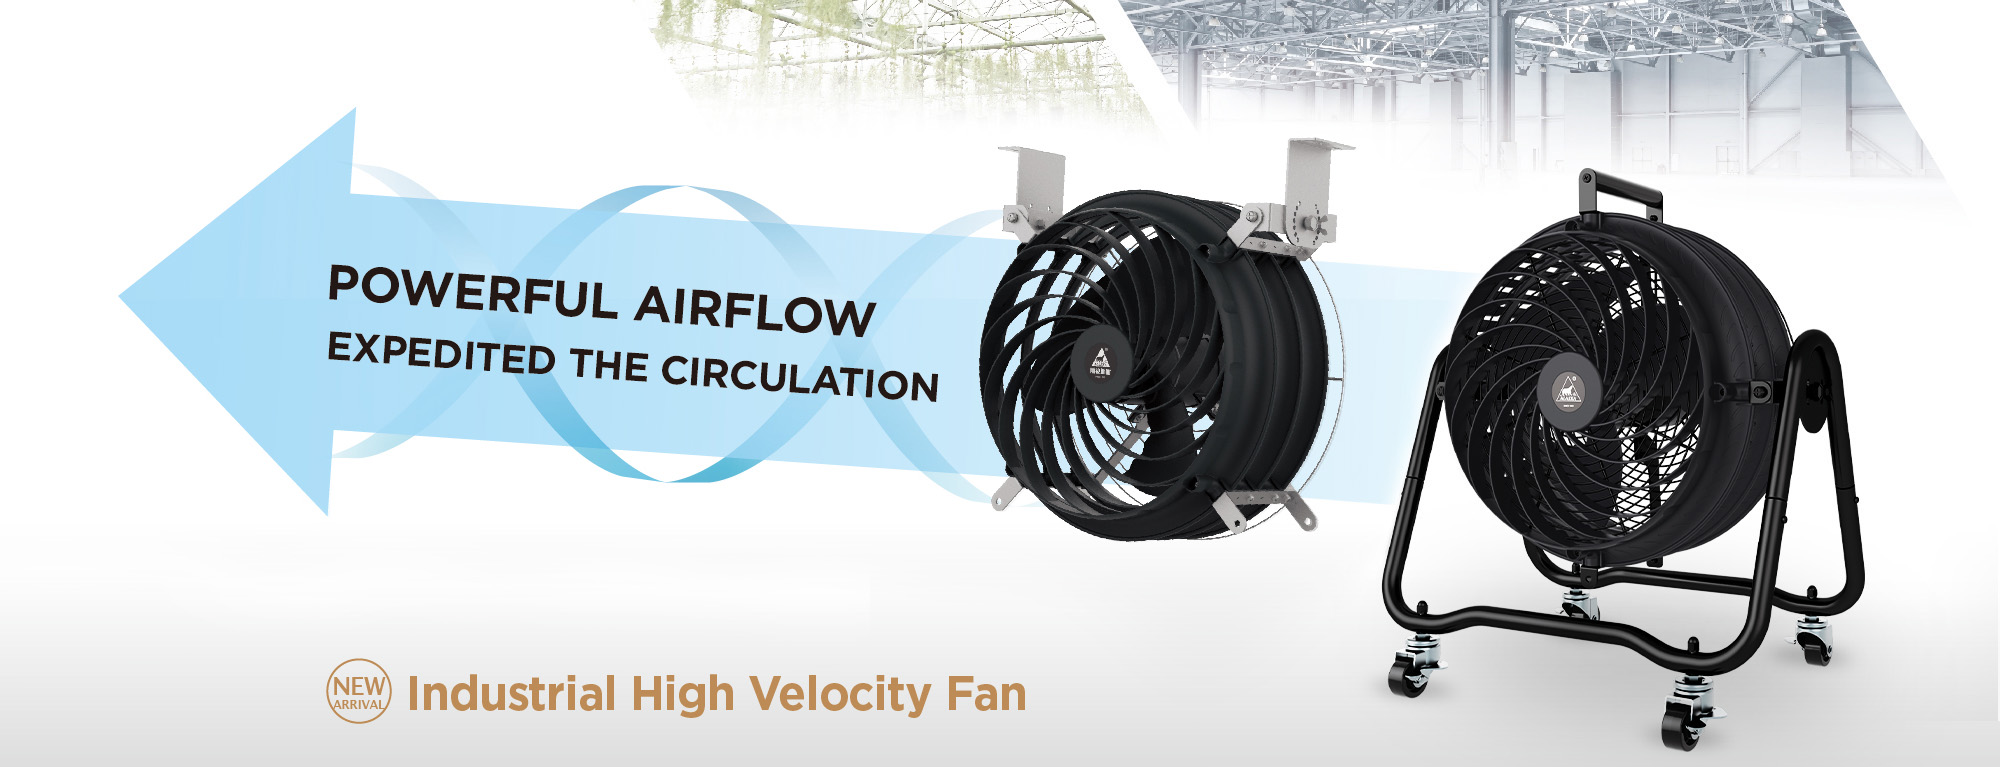 Industrial High Velocity Fan